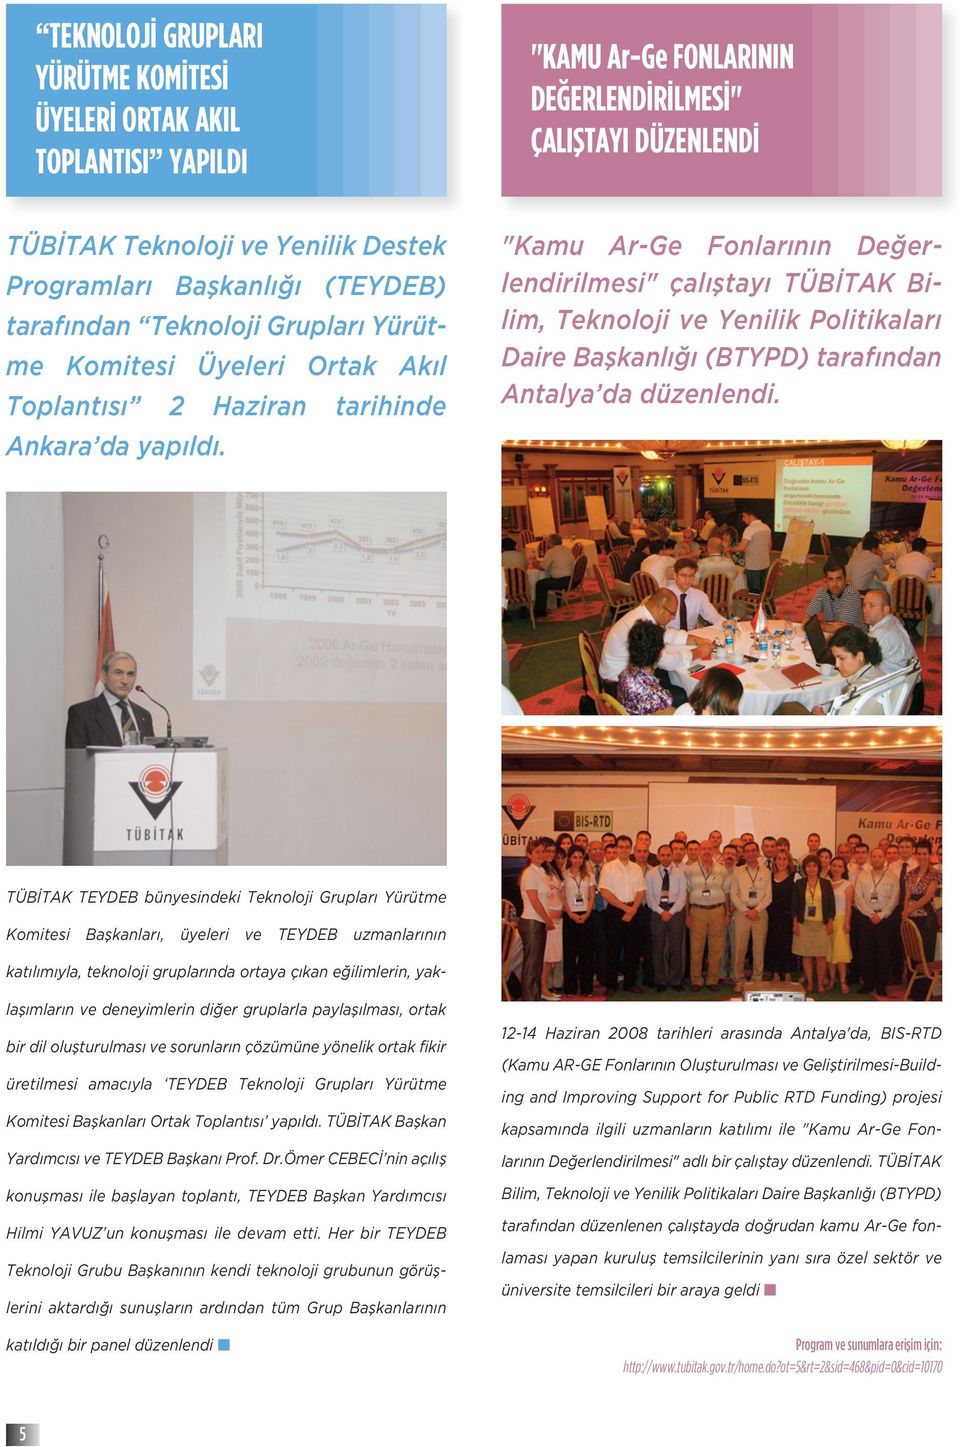 "Kamu Ar-Ge Fonlarının Değerlendirilmesi" çalıştayı TÜBİTAK Bilim, Teknoloji ve Yenilik Politikaları Daire Başkanlığı (BTYPD) tarafından Antalya da düzenlendi.